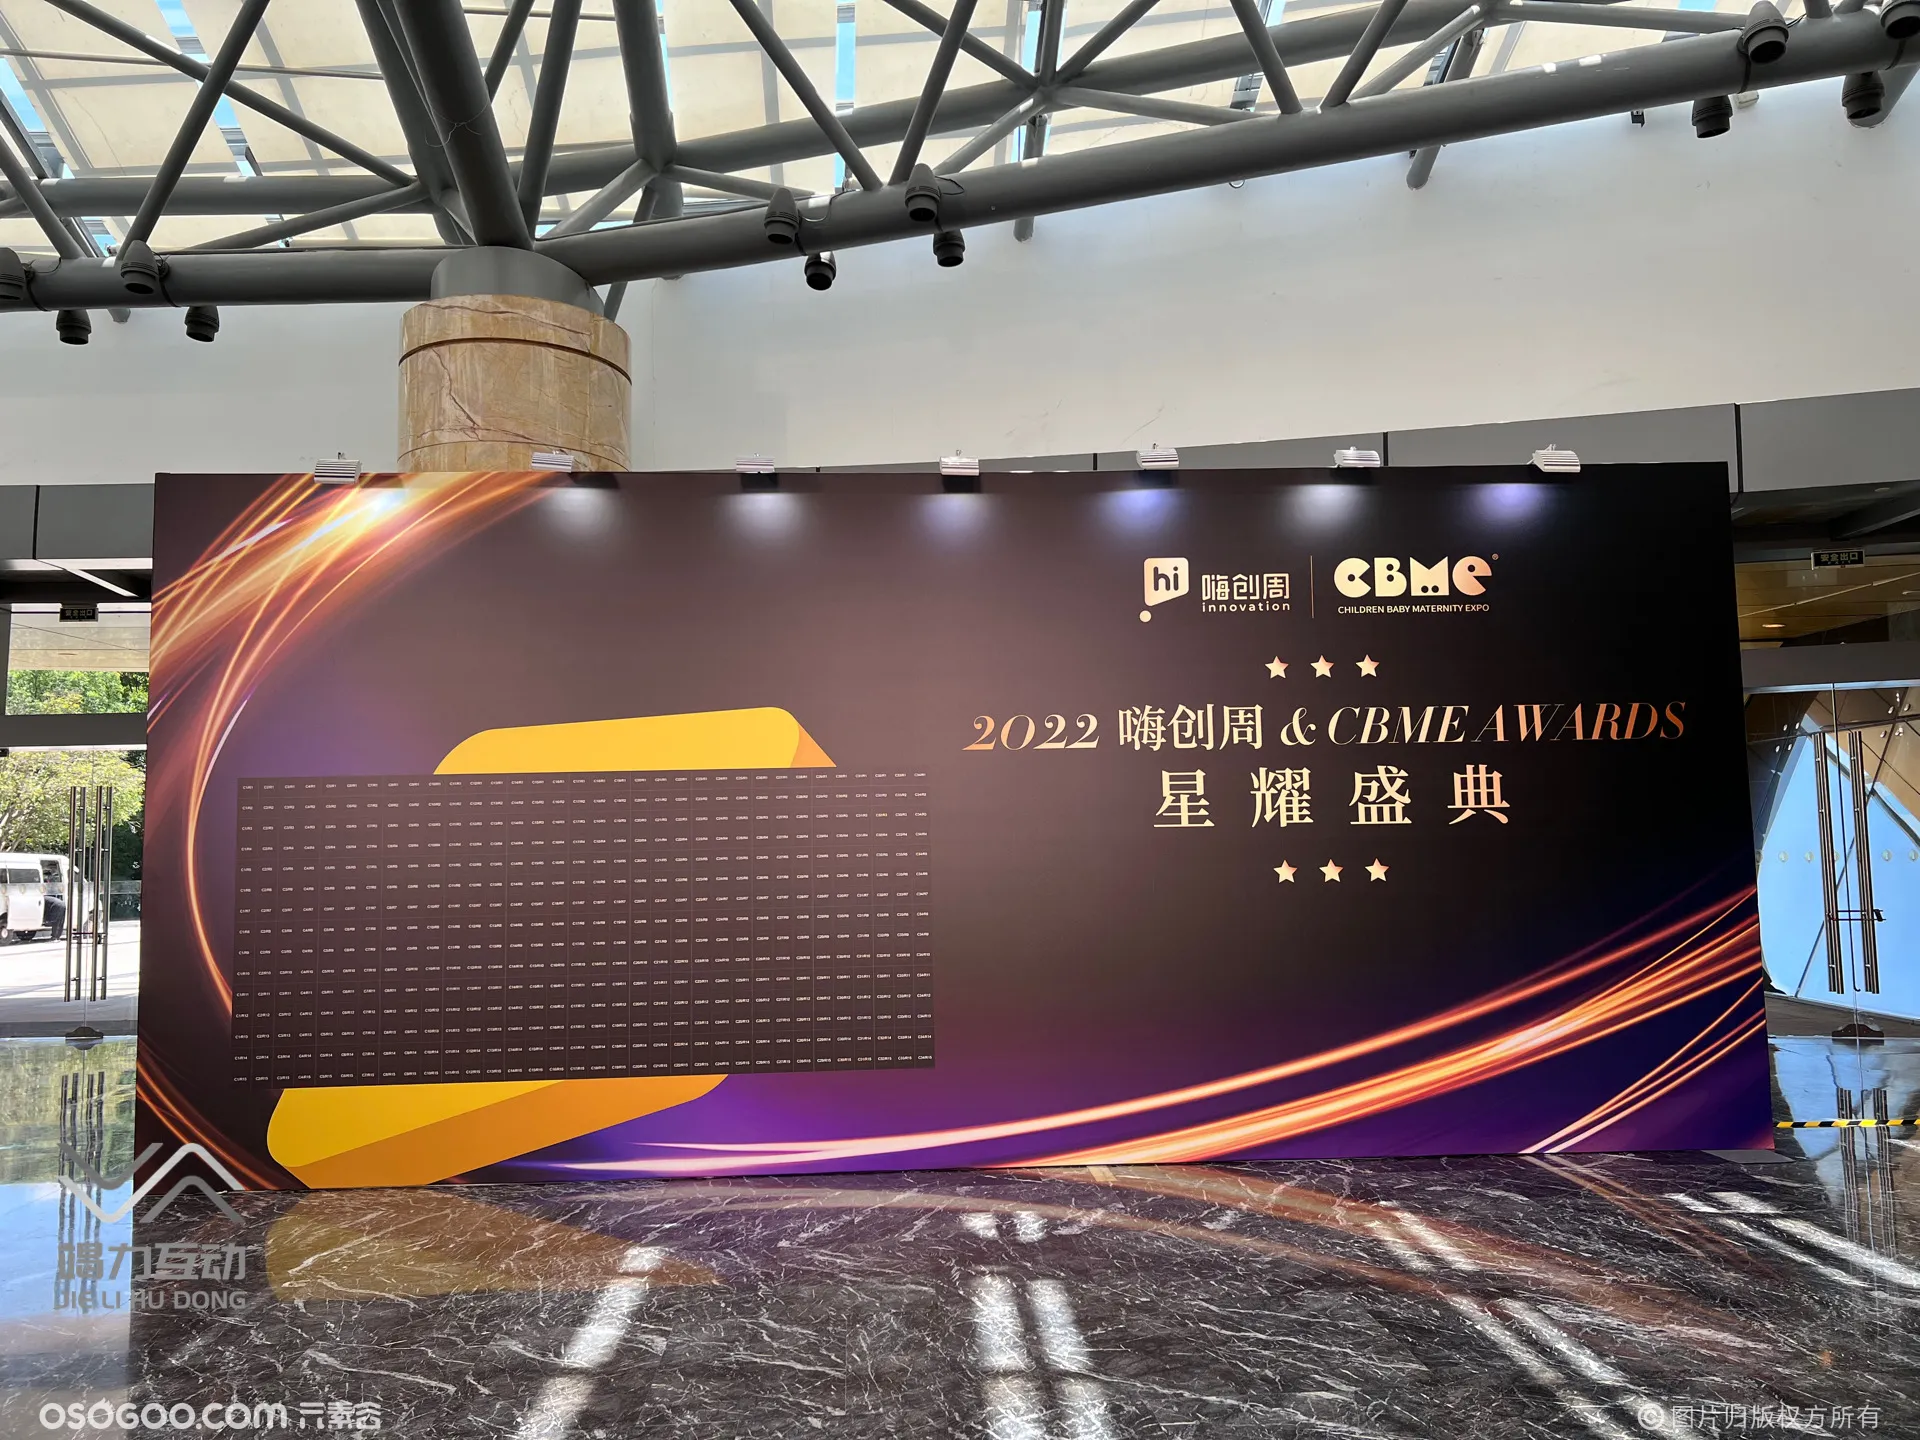 杭州站嗨创周星耀盛典/马赛克拼图签到互动装置